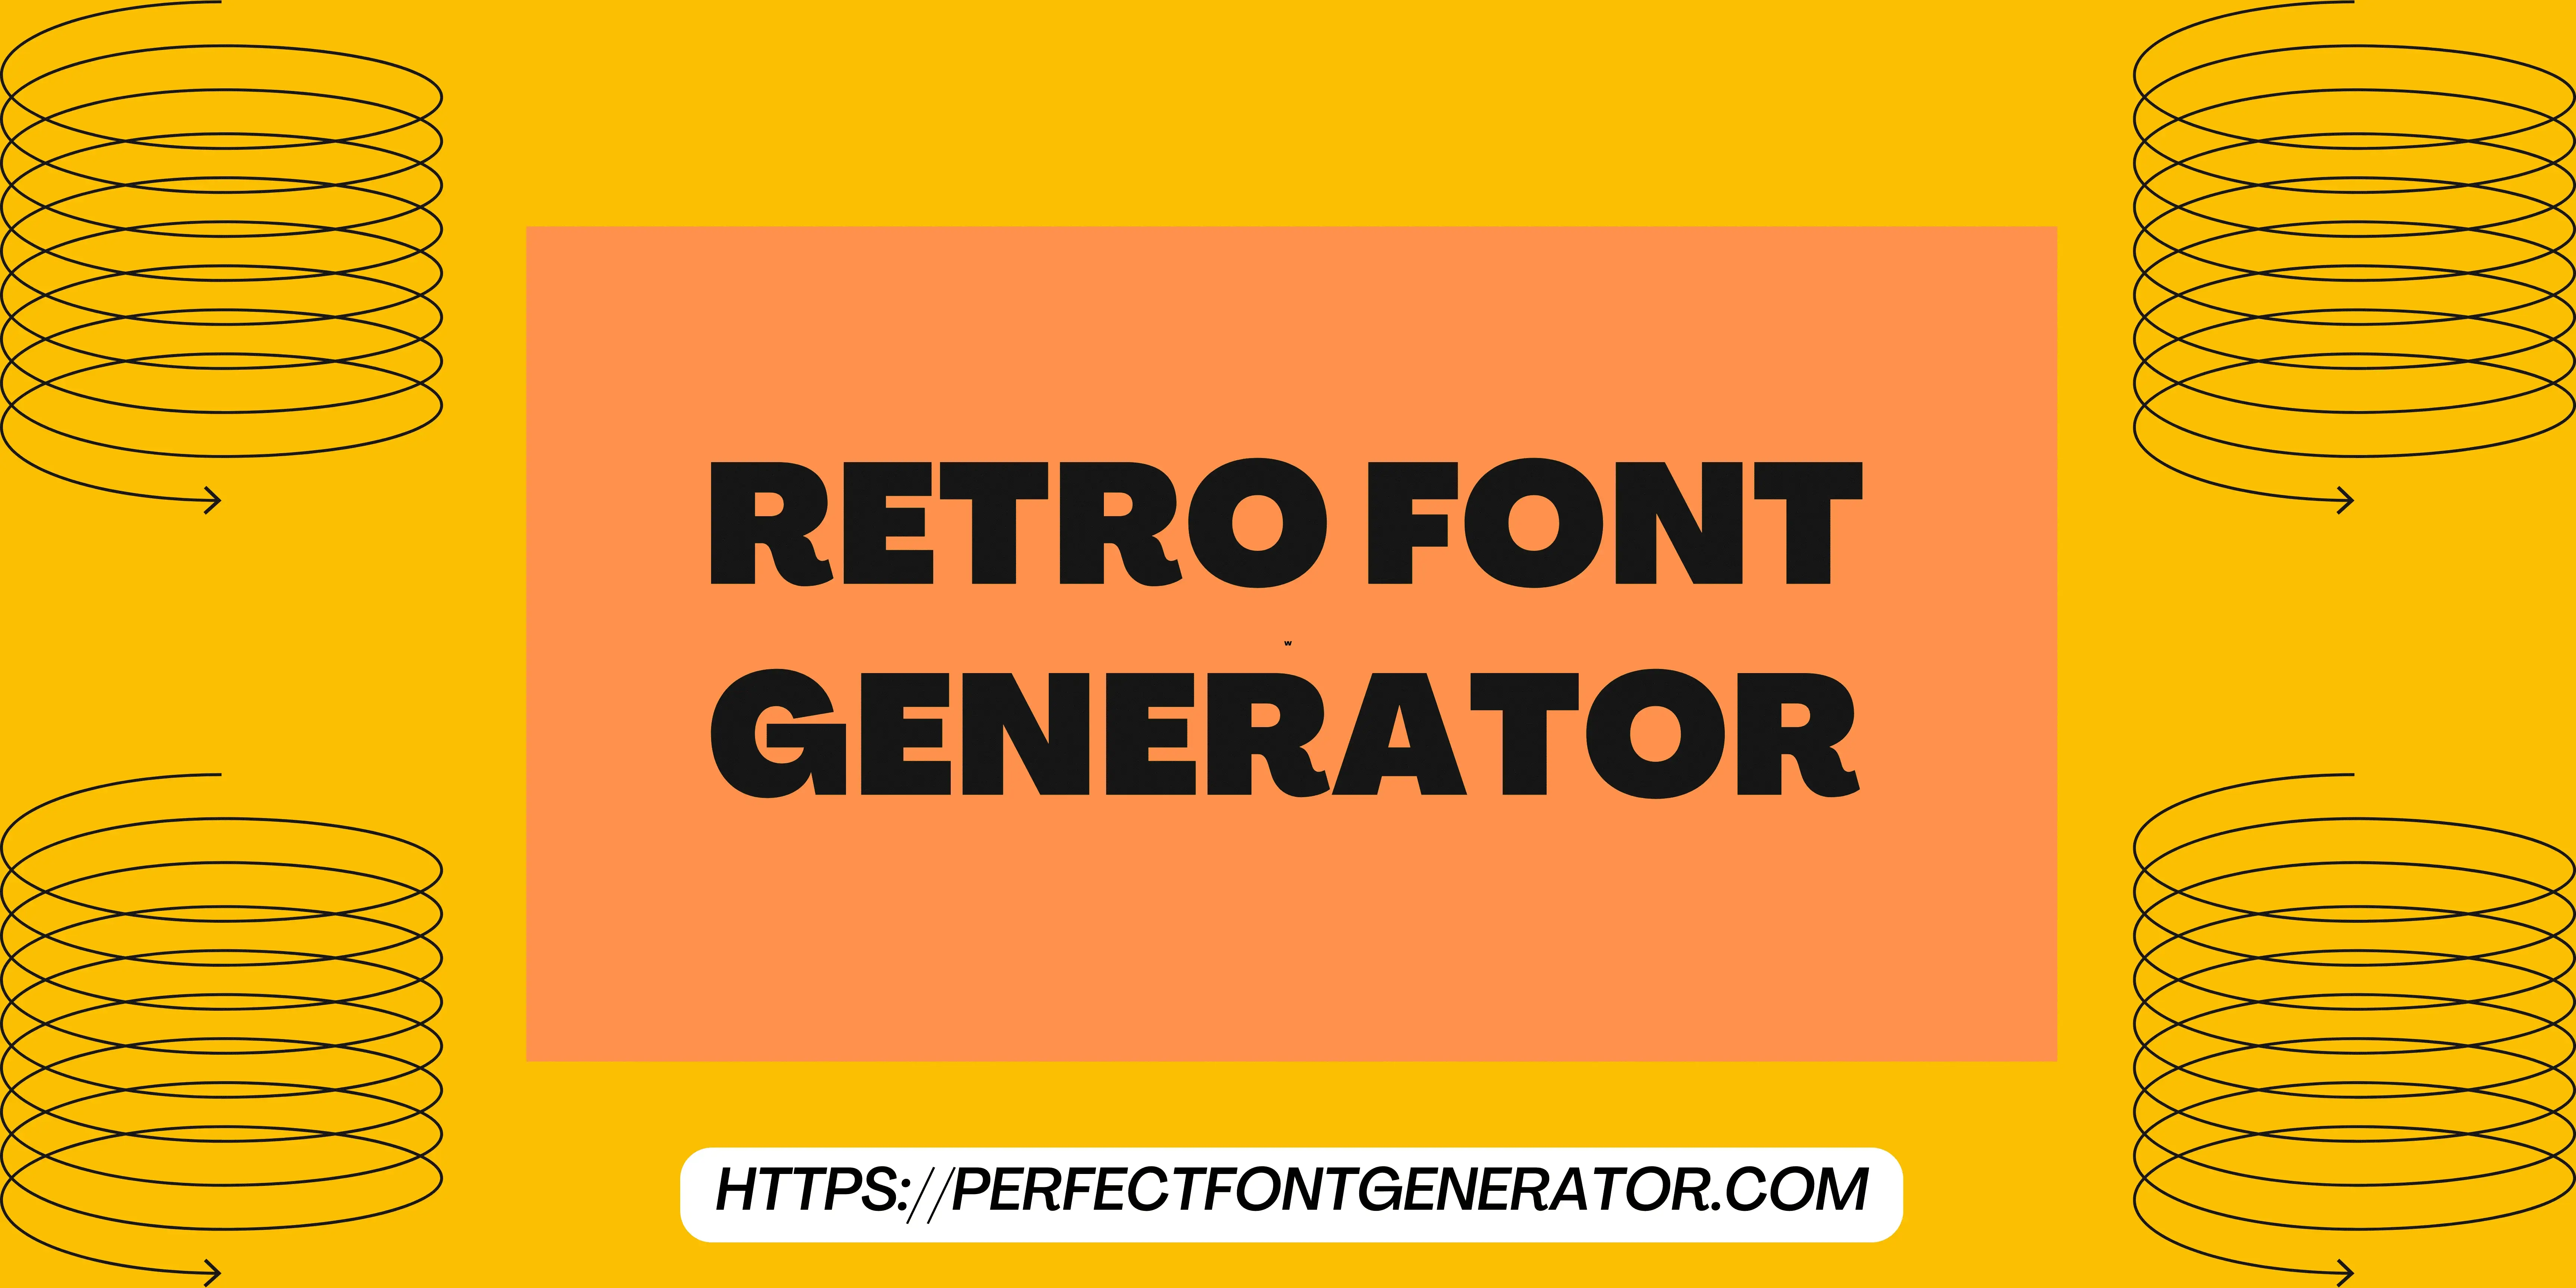 retro font generator